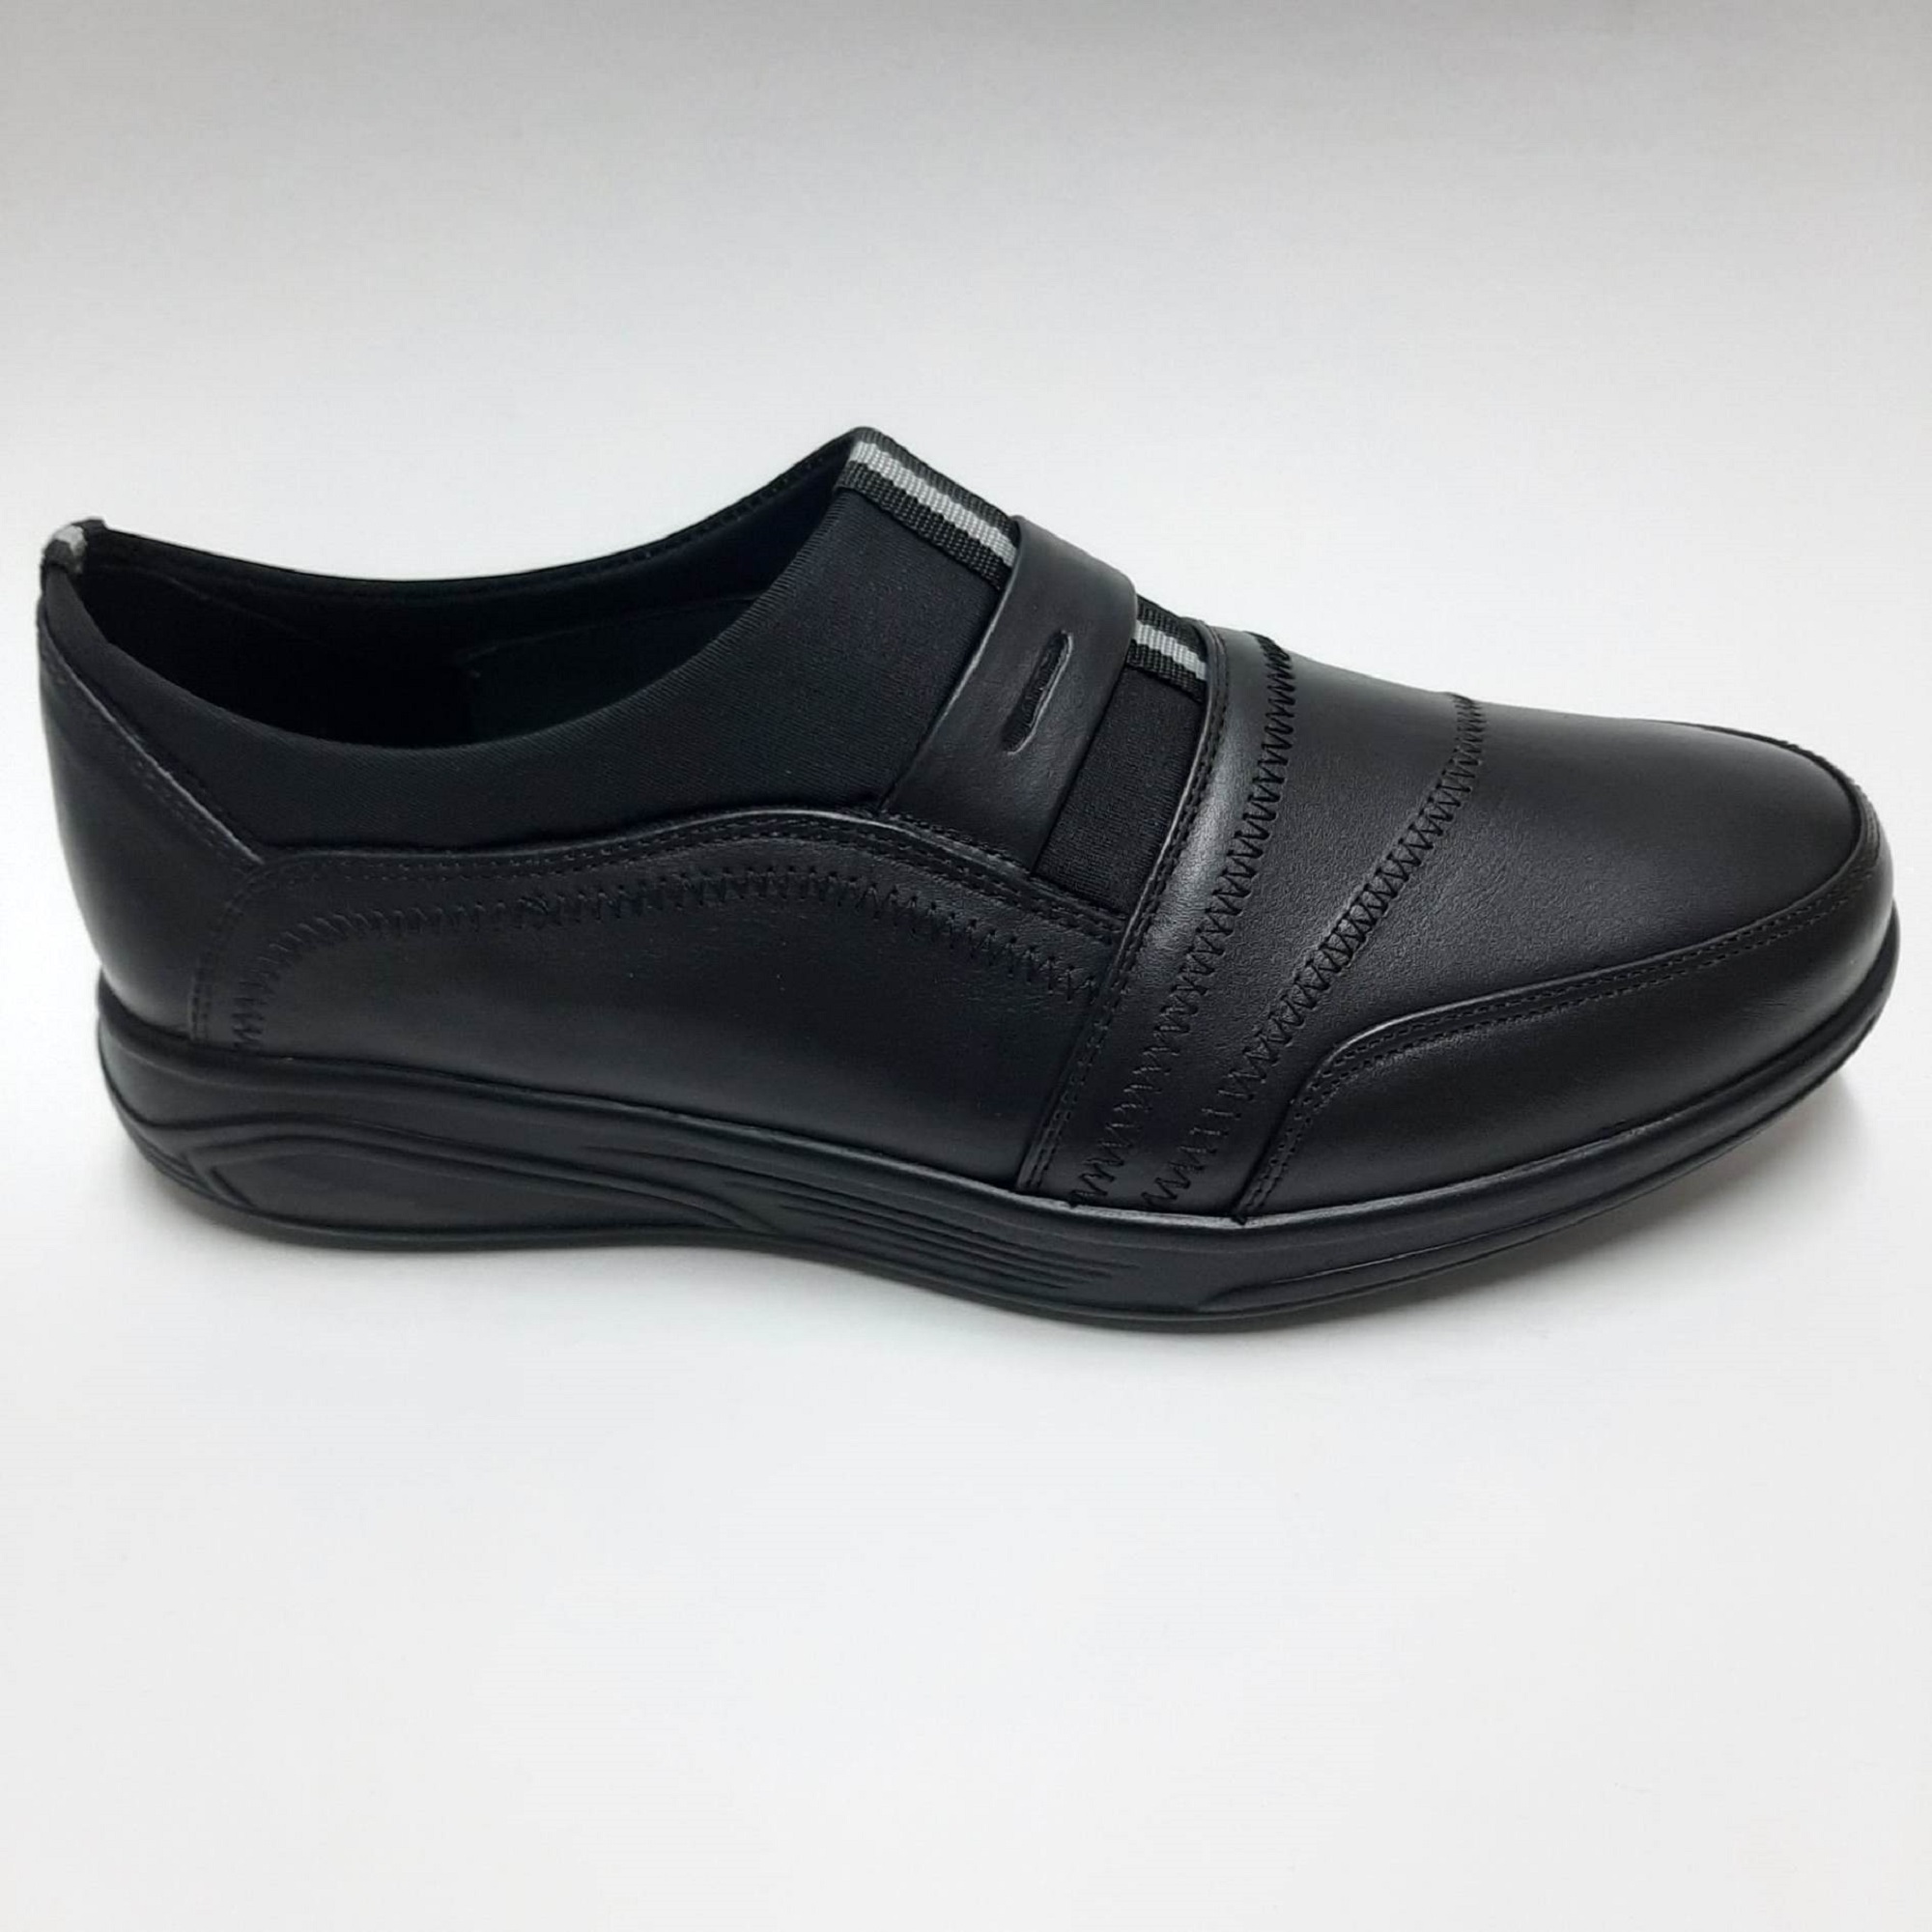 Forex Haki̇ki̇ Deri̇ Ortopedi̇k Yürüyüş Tabanli Erkek Ayakkabısı C-74